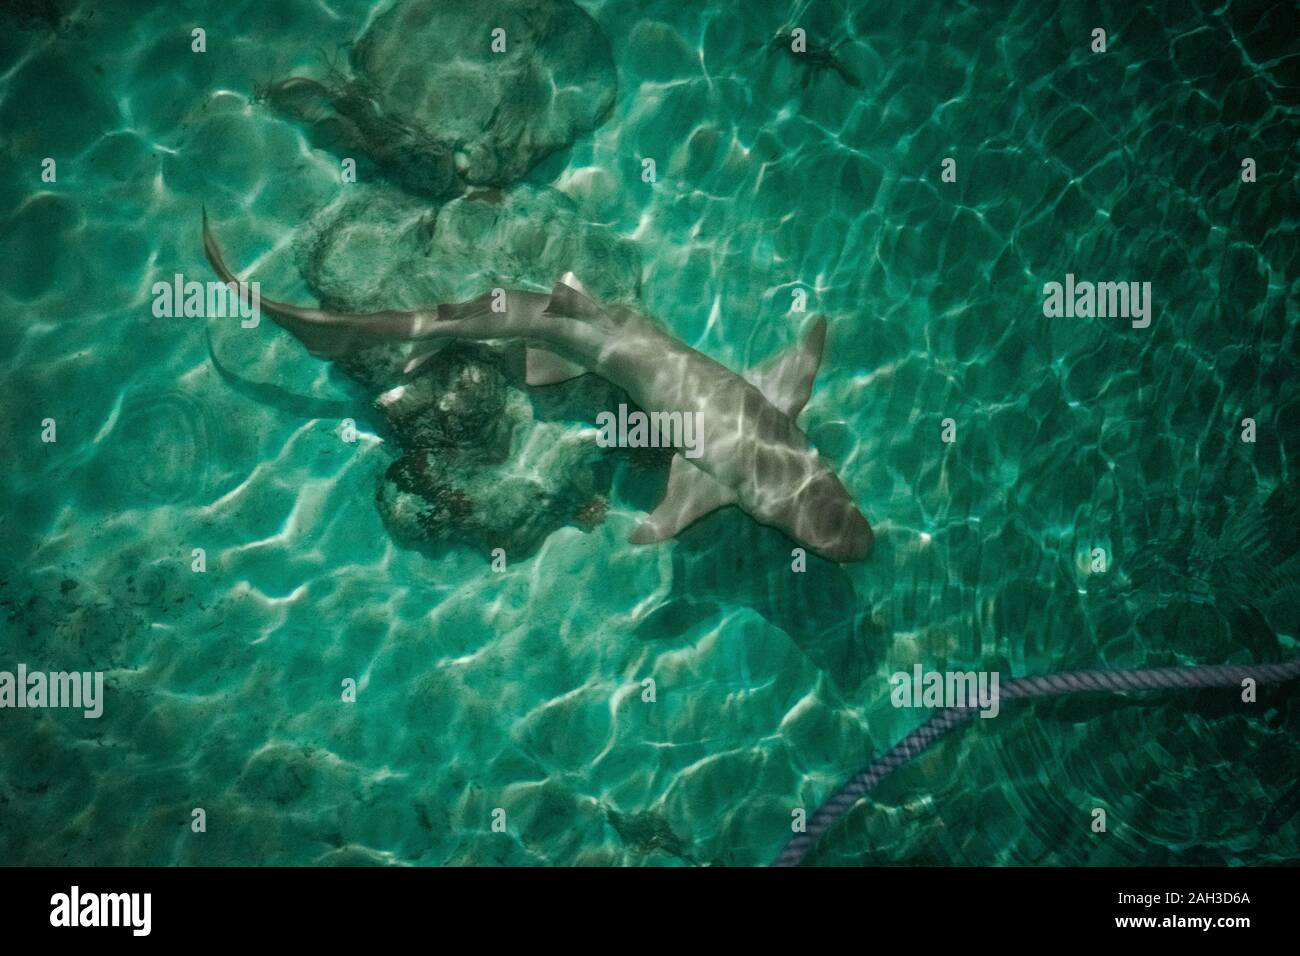 Shark at the maldives Stock Photo